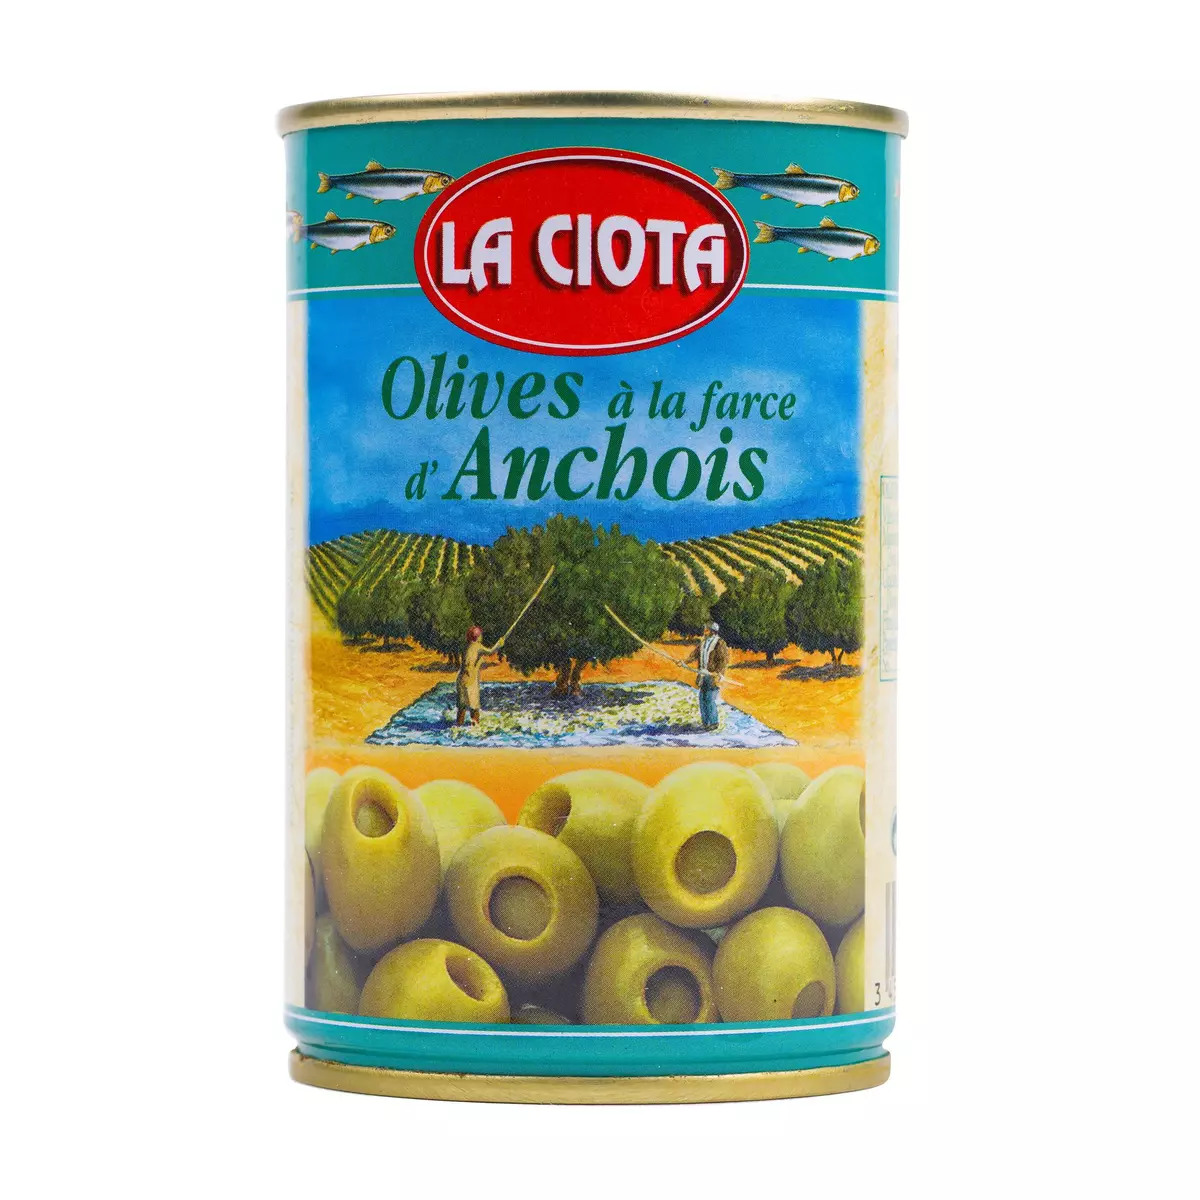 LA CIOTA Olives vertes à la farce d'Anchois 120g